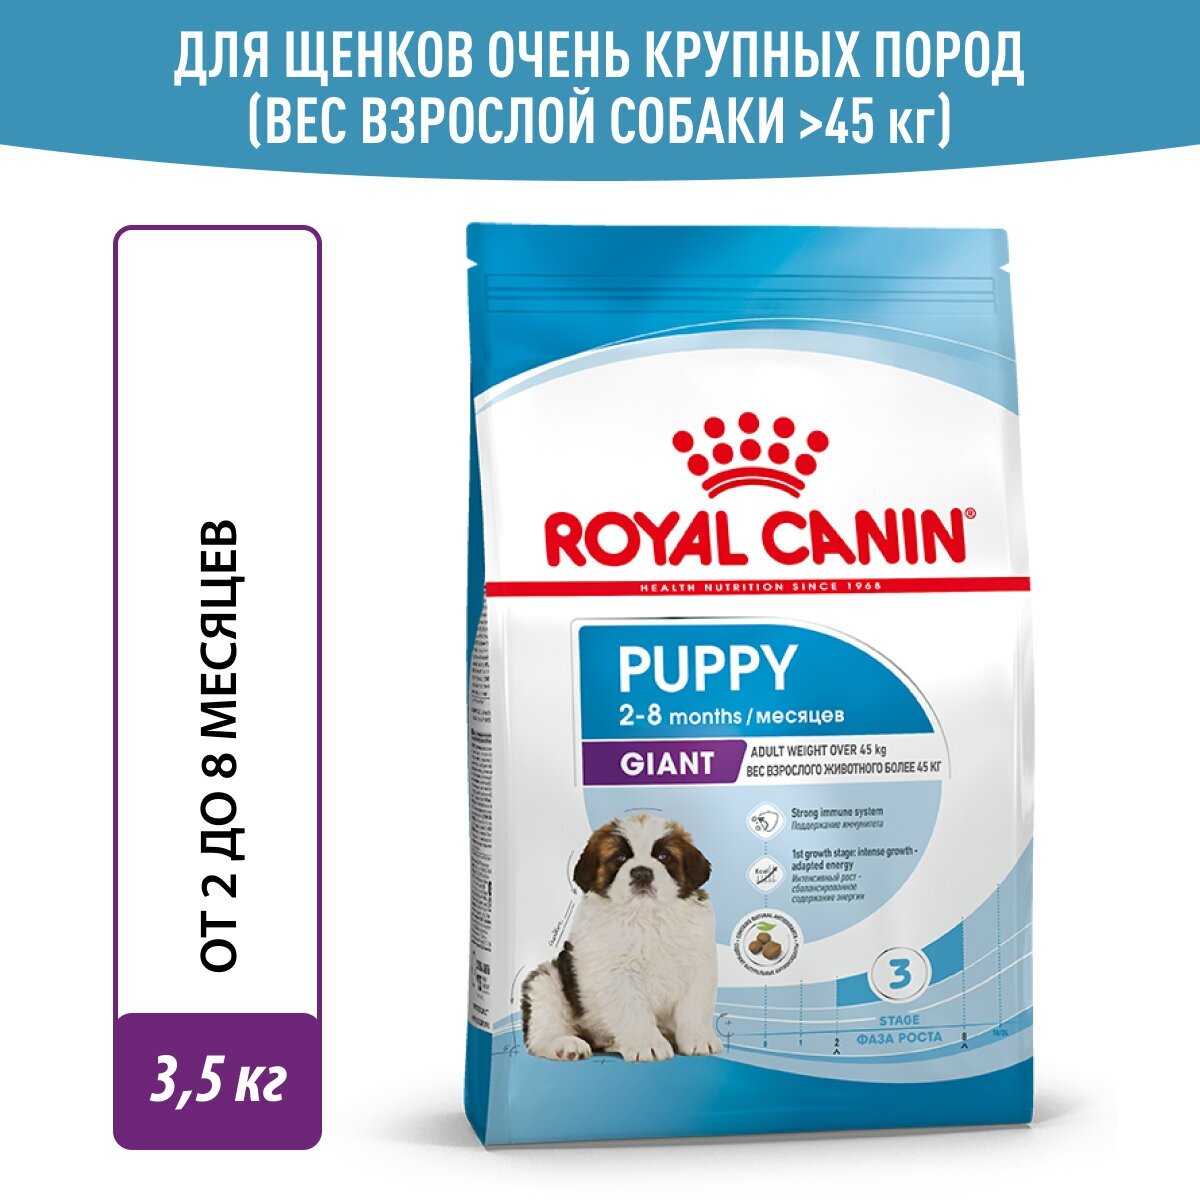 Сухой корм Royal Canin для щенков крупных пород, 4кг - фото №1